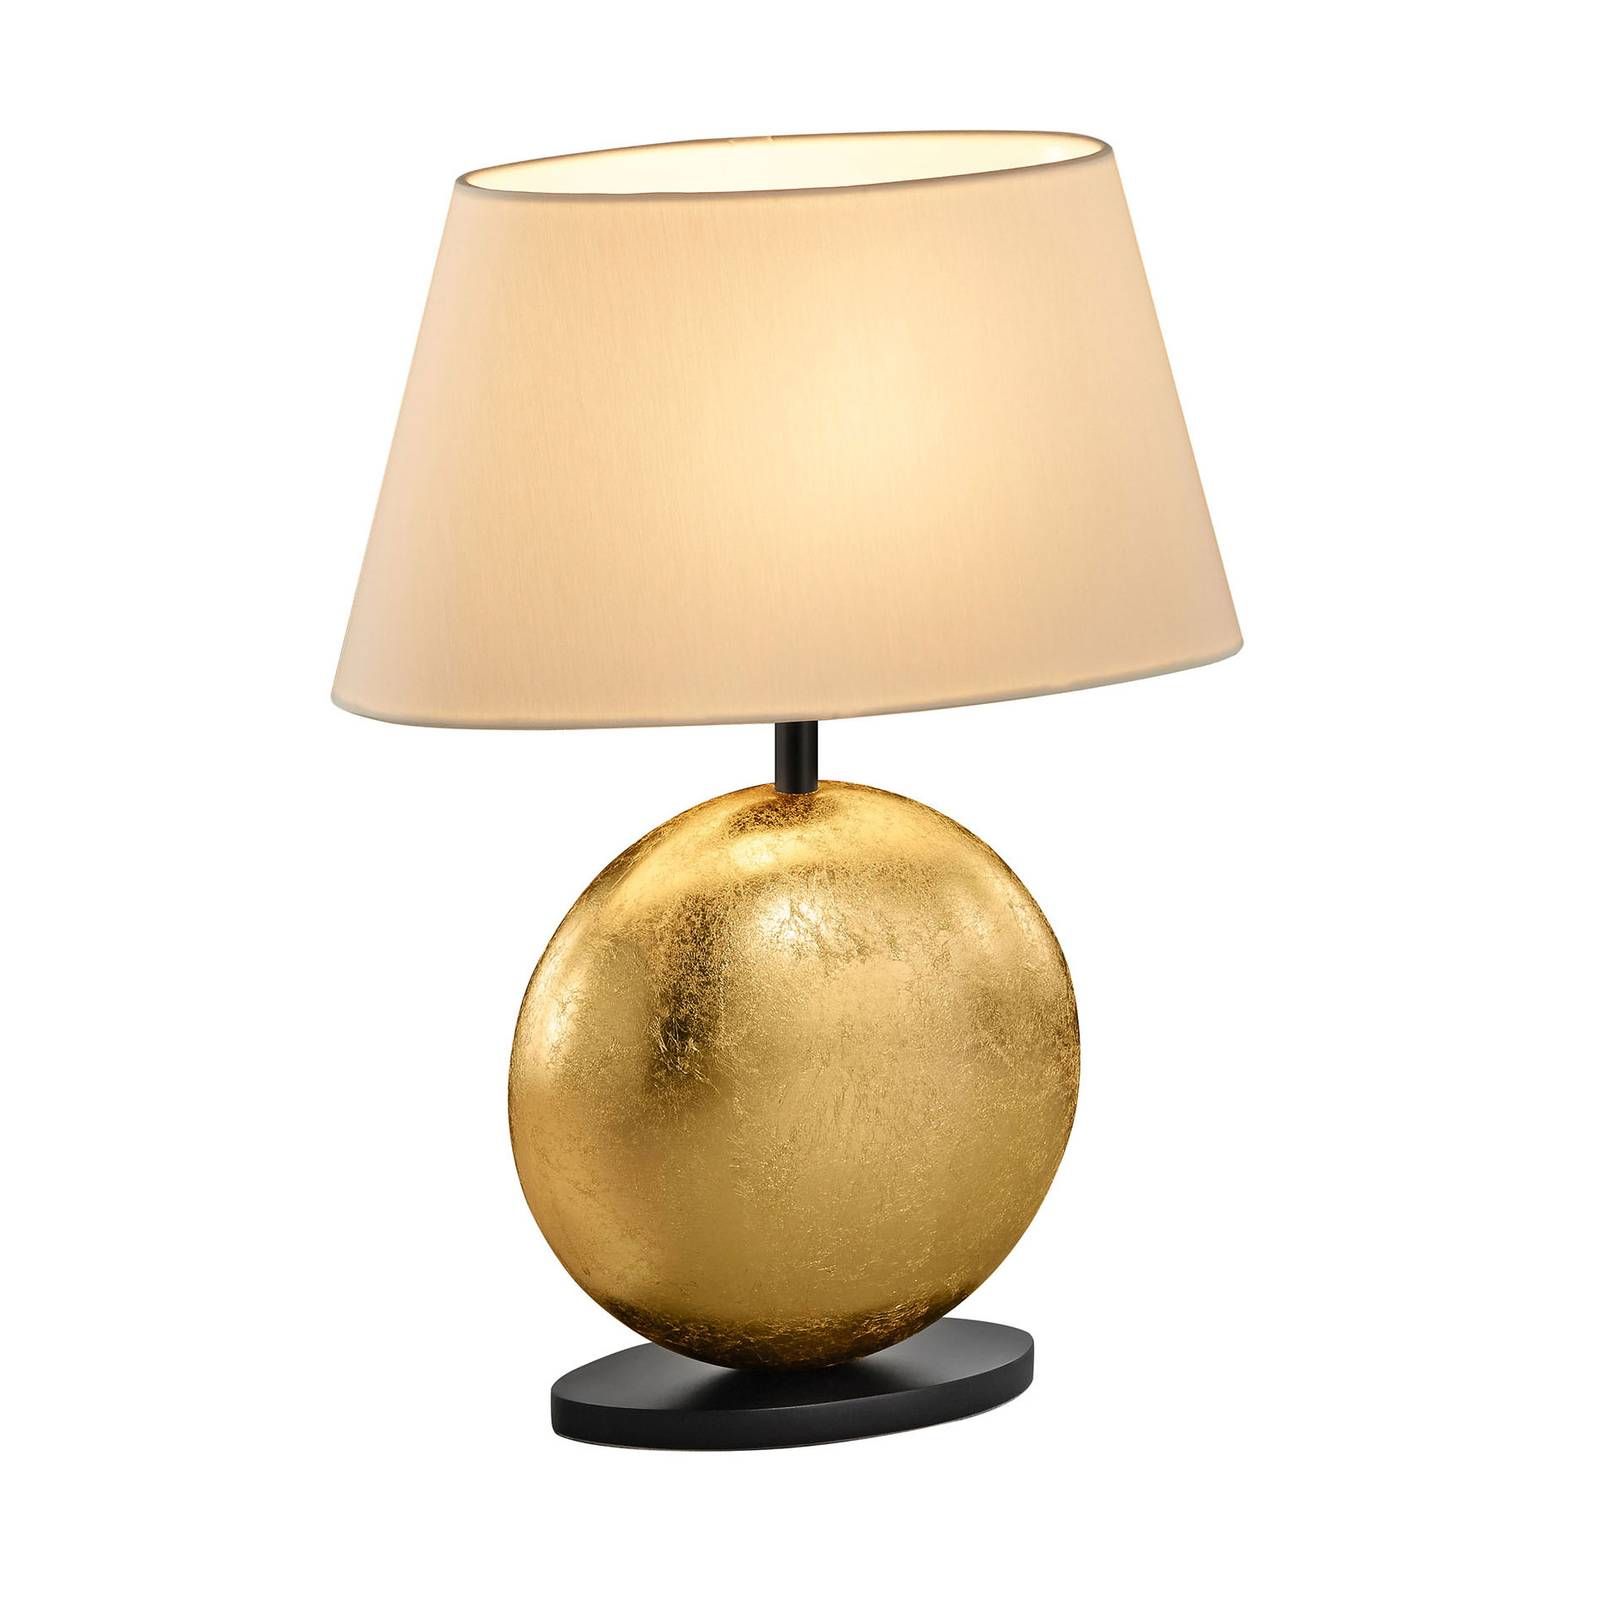 BANKAMP Mali stolová lampa, krémová/zlatá, 41 cm, Obývacia izba / jedáleň, chinc, hliník, E14, 60W, P: 28 cm, L: 14 cm, K: 41cm